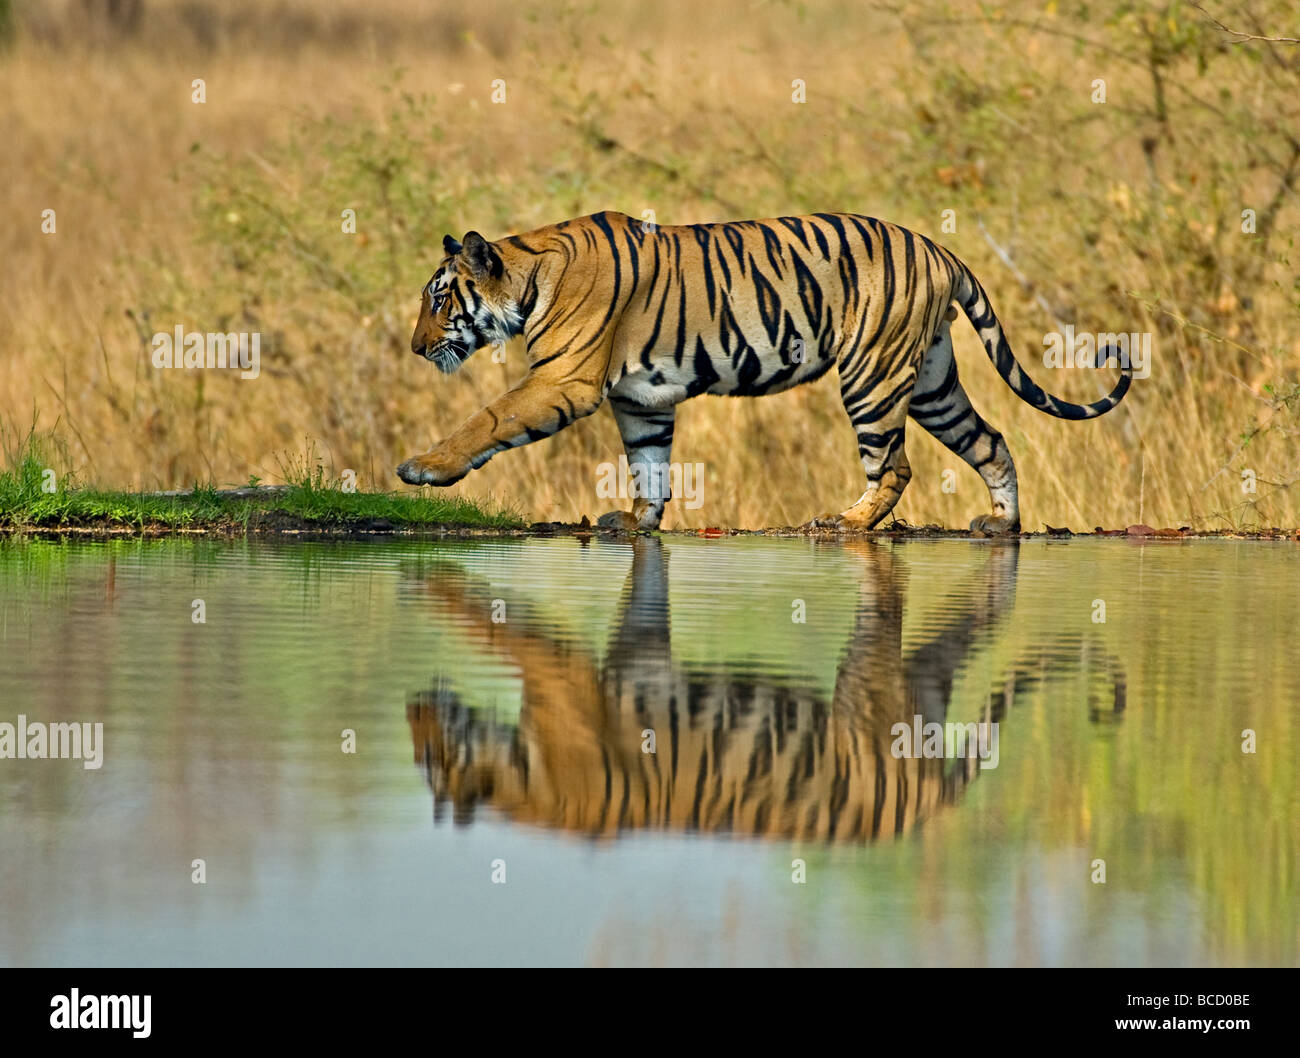 Tigre du Bengale (Panthera tigris tigris) mâle sur le lac. Bandhavgarh. L'Inde Banque D'Images